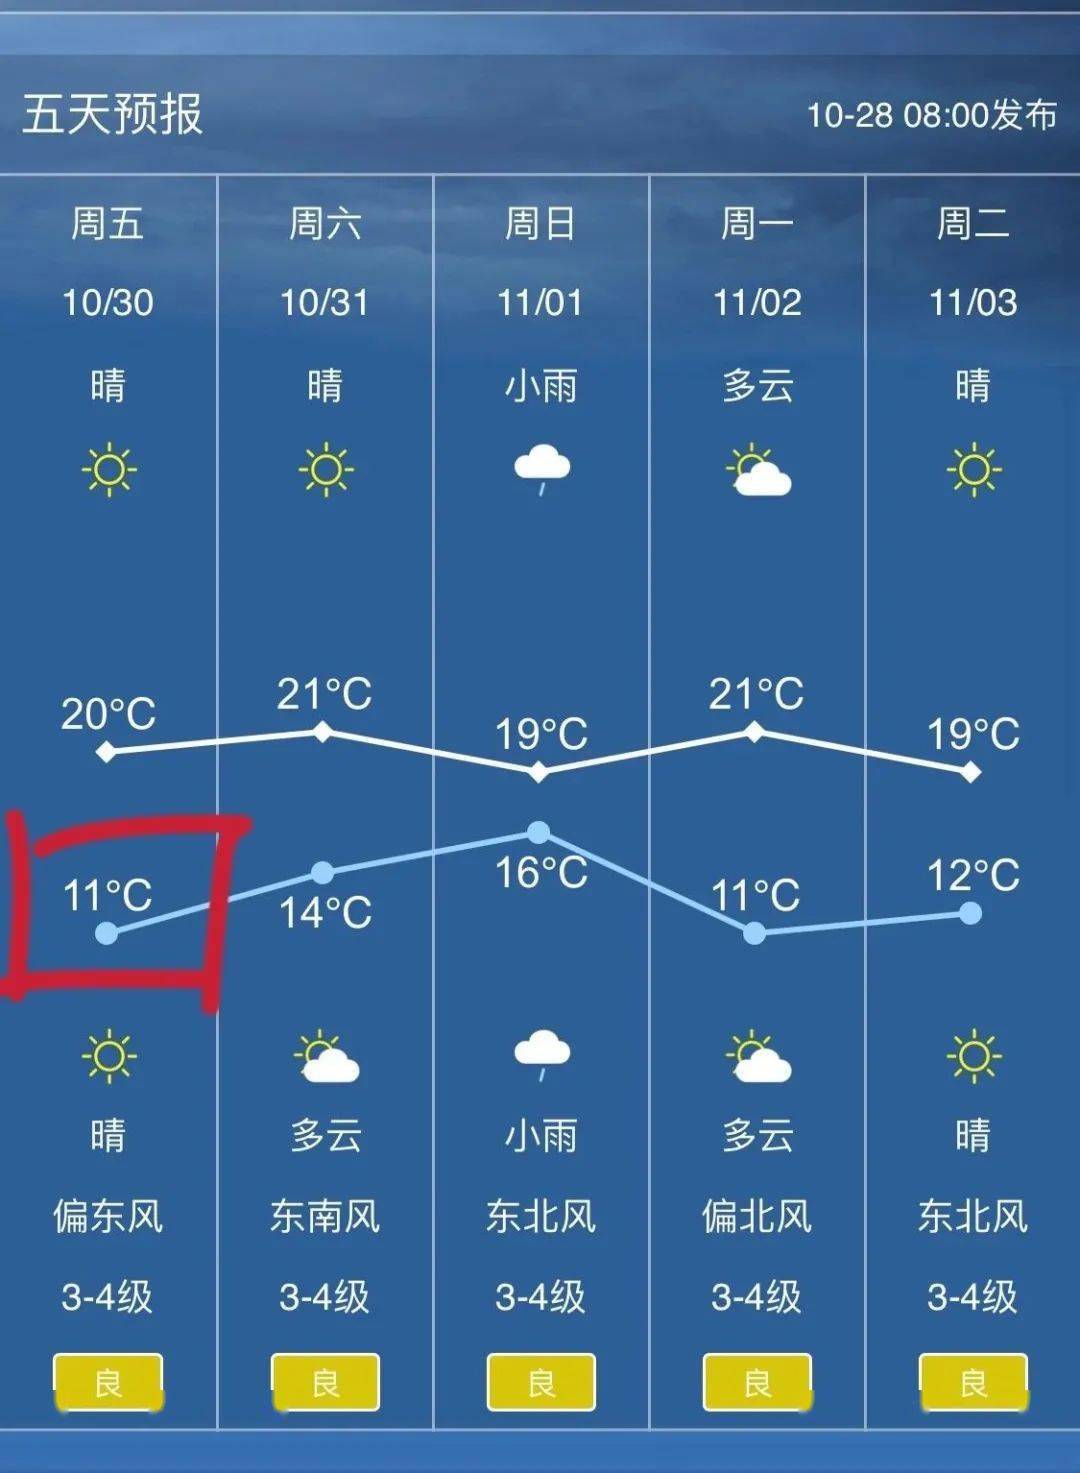 本周最低气温逼近1位数受弱冷空气影响从吴江天气预报来看北风加大